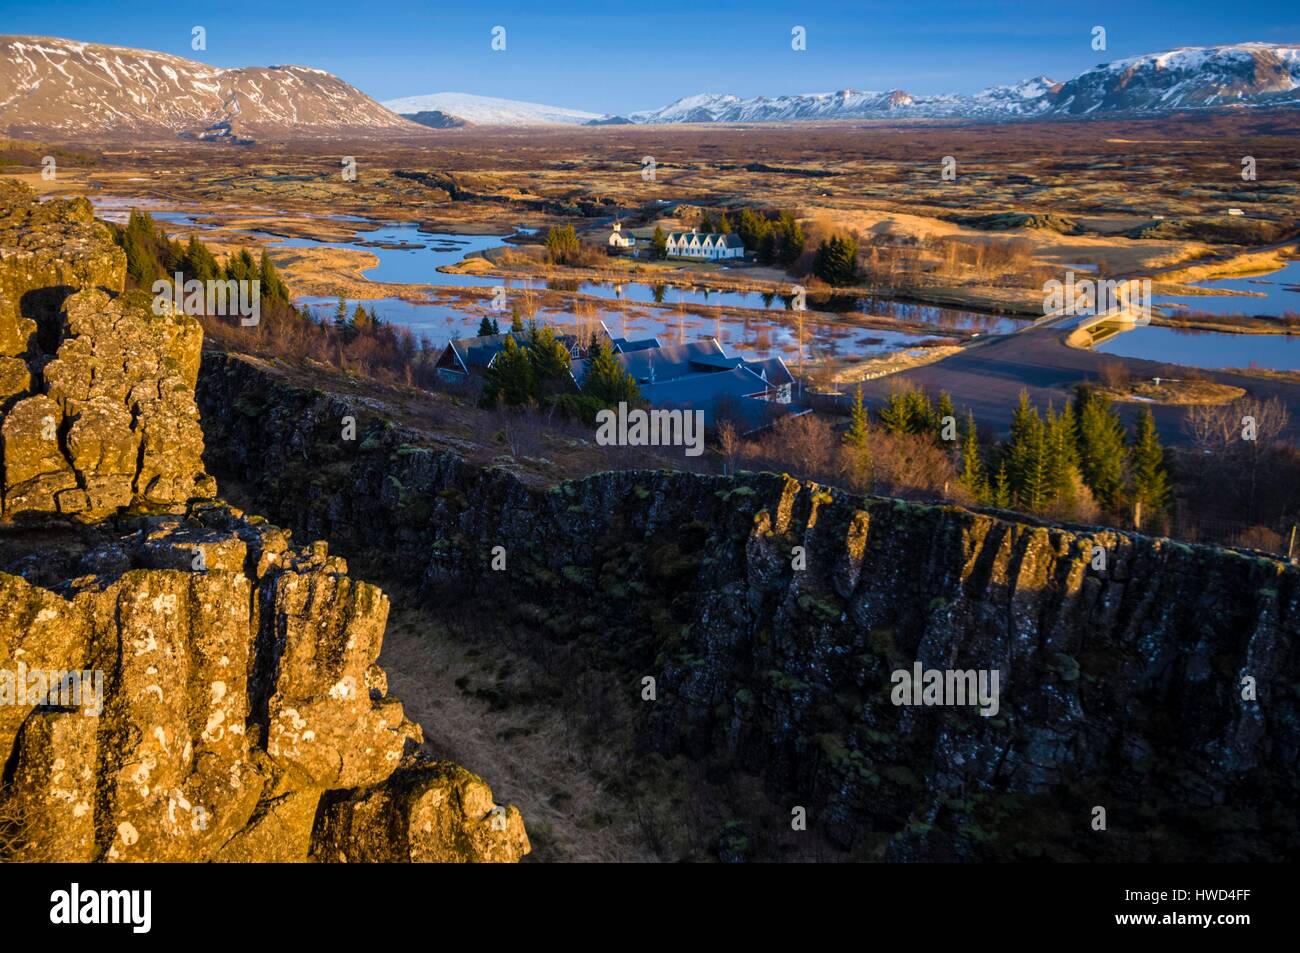 Island, Rangárvallahreppur, den Nationalpark Thingvellir Weltkulturerbe der UNESCO, das isländische Parlament in 930 bei Thingvellir (althingi) gegründet und blieb hier bis 1798 die Fläche a National Park im Jahre 1928 wurde, außergewöhnlicher Ort geologisch ist der Standort in der Trennung von Amerikanischen und Europäischen tektonischen Platten entfernt Stockfoto